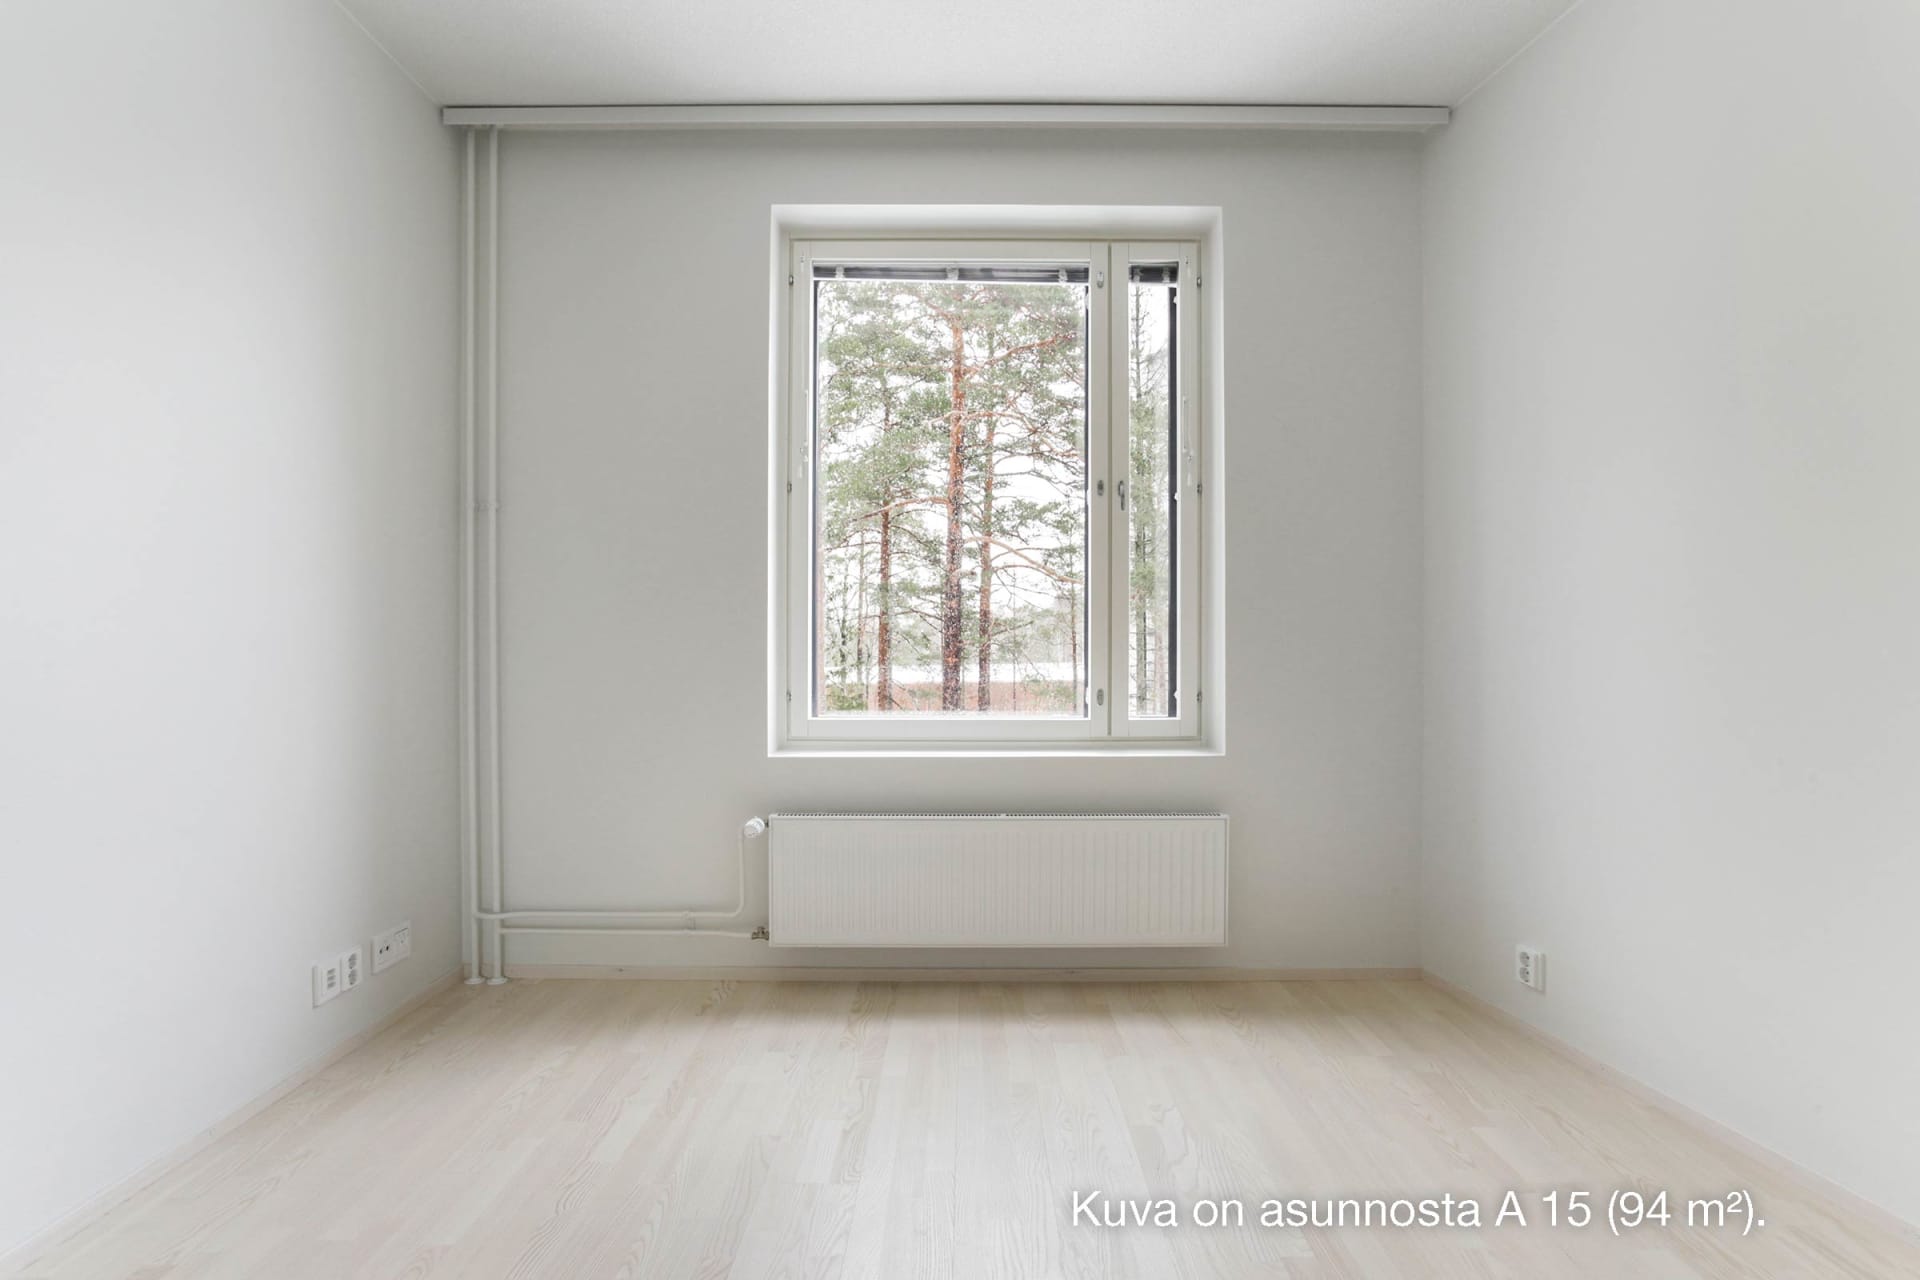 Myytävät asunnot Espoon Kronos, Marinranta, Kivenlahti. Kuva on Espoon Kronoksen asunnosta A 15.